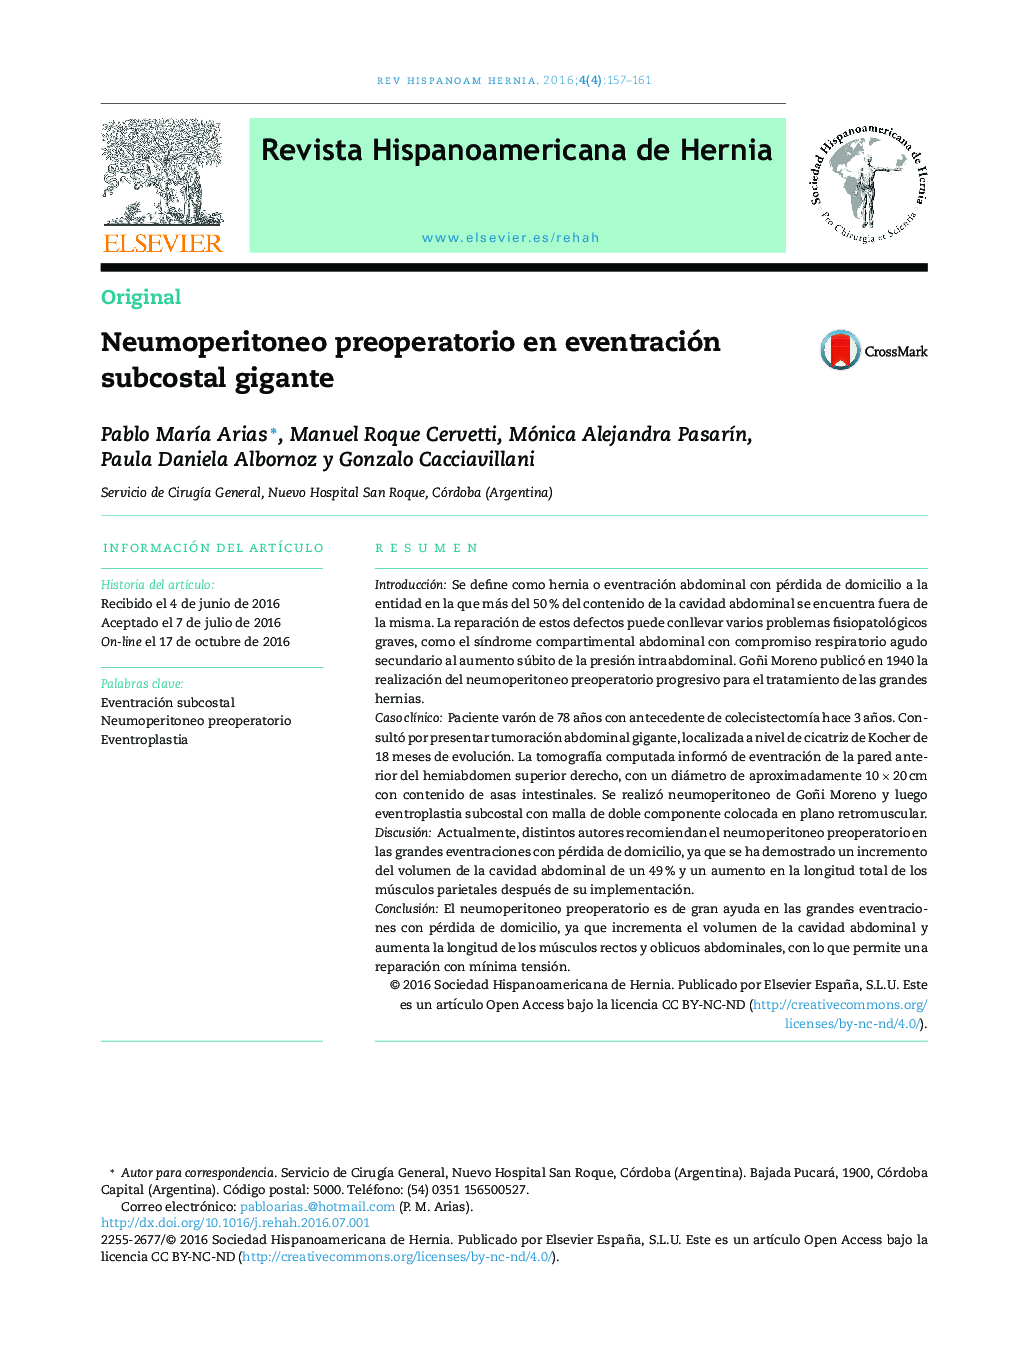 Neumoperitoneo preoperatorio en eventración subcostal gigante